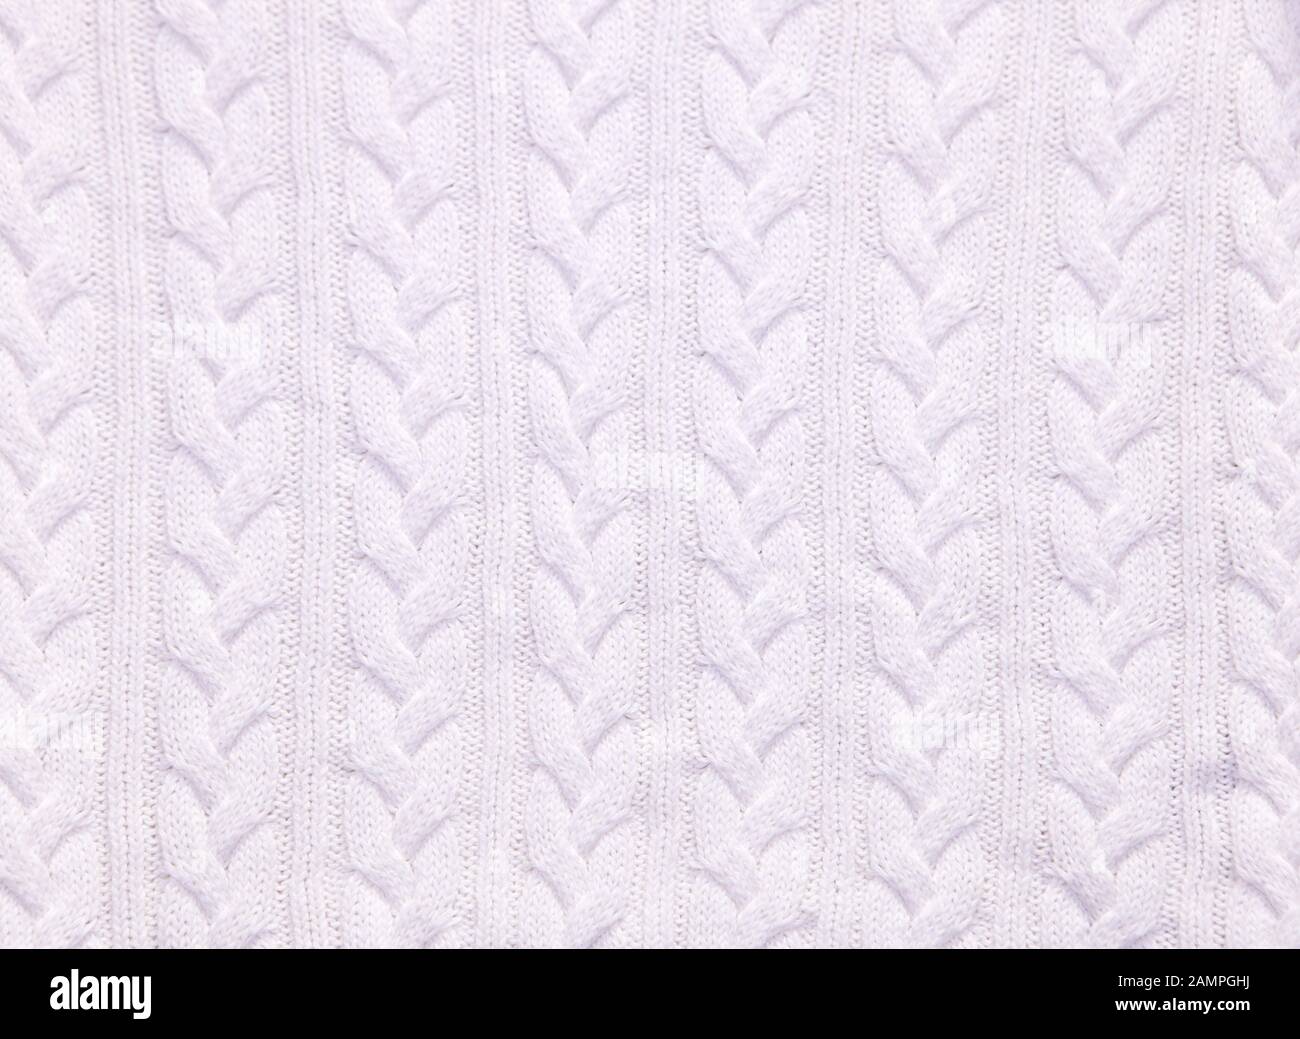 Maglia in lana merino bianca artigianale grande coperta, filato super chunky, texture bianca trendy concetto Foto Stock